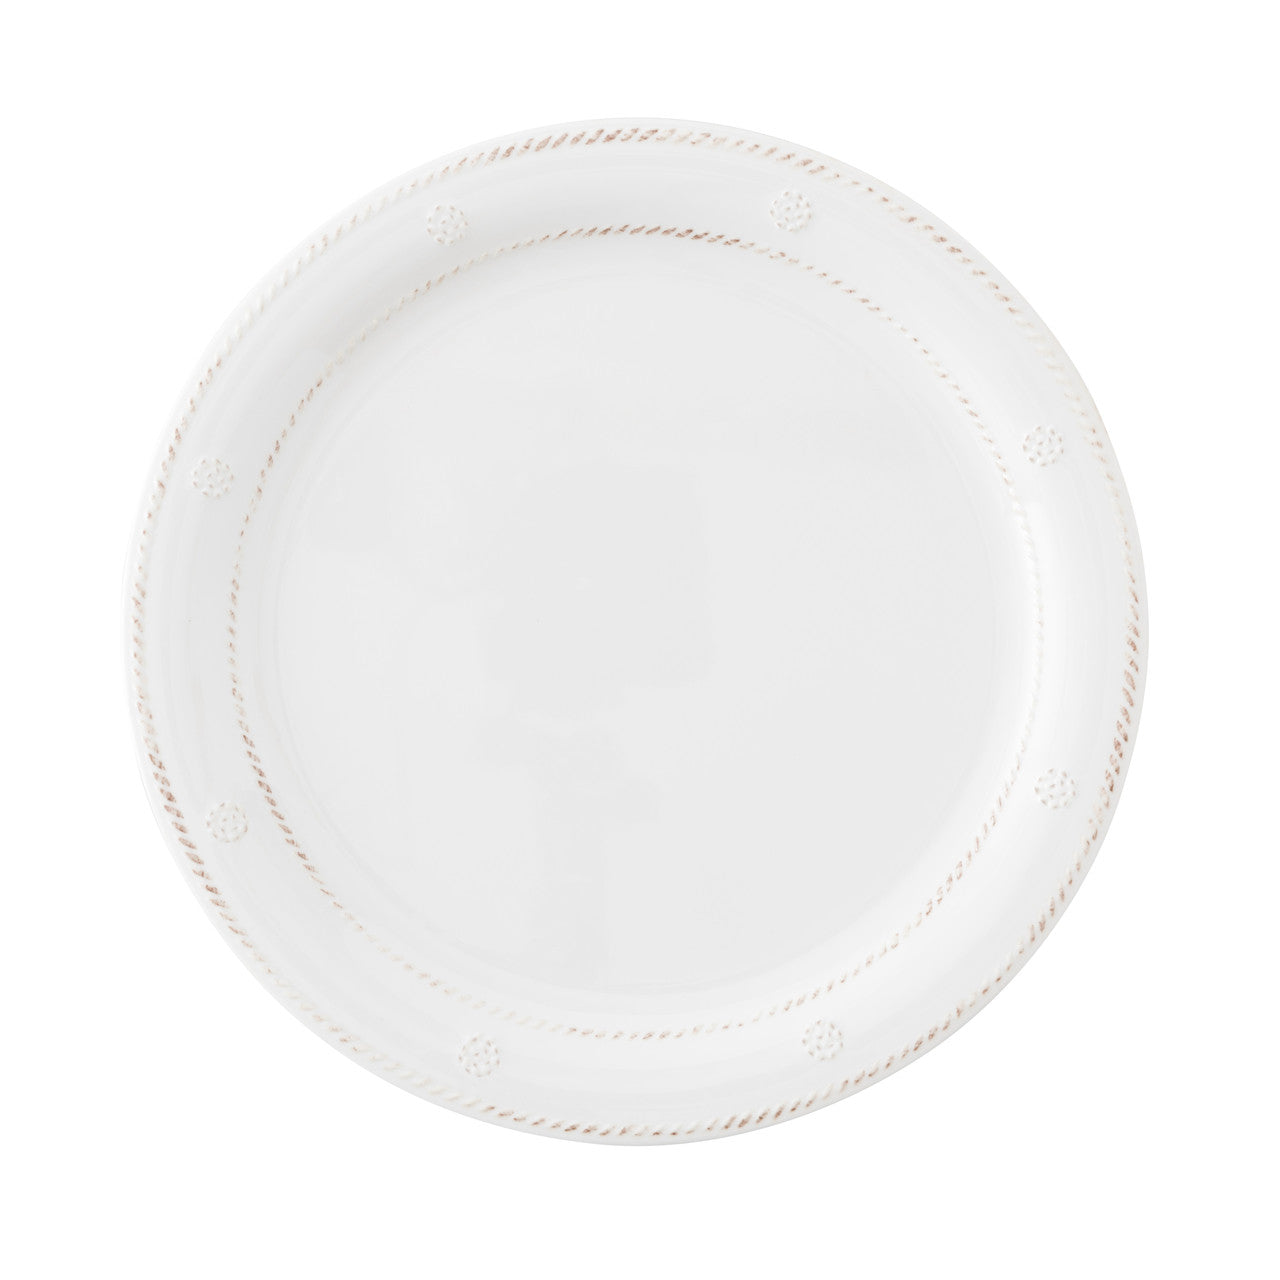 Juliska Berry & Thread Melamine Dinner Plate- set of 8